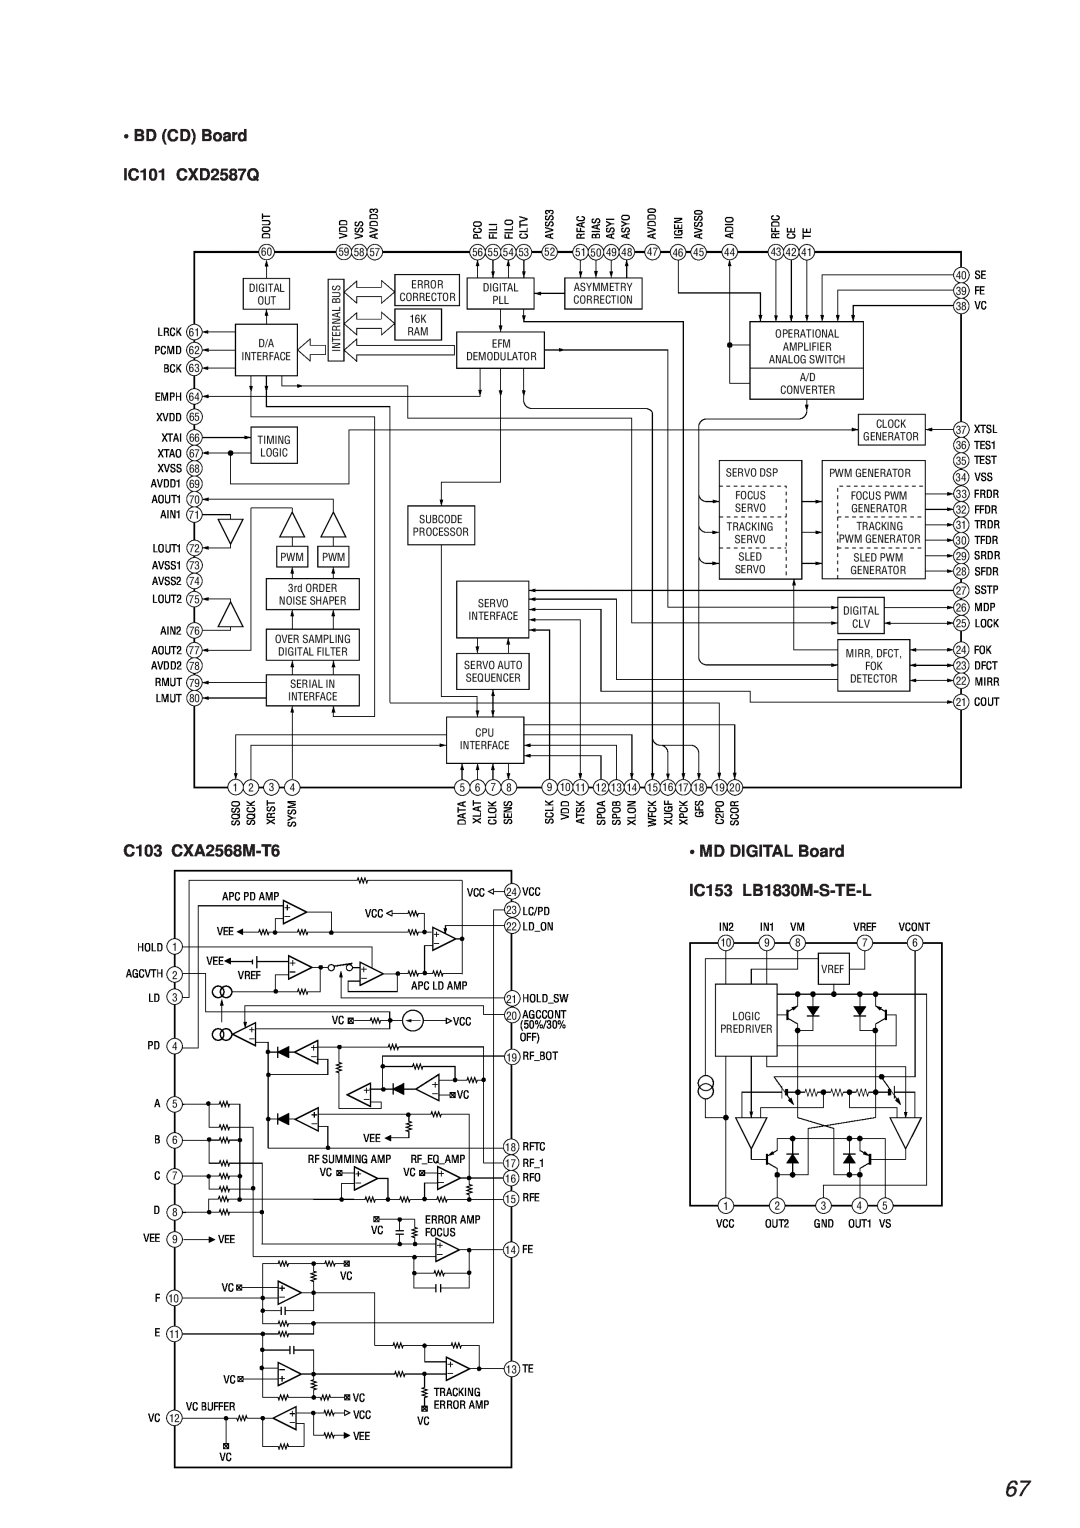 Sony HCD-MD373 service manual • BD CD Board, IC101 CXD2587Q, C103 CXA2568M-T6, • MD DIGITAL Board, IC153 LB1830M-S-TE-L 